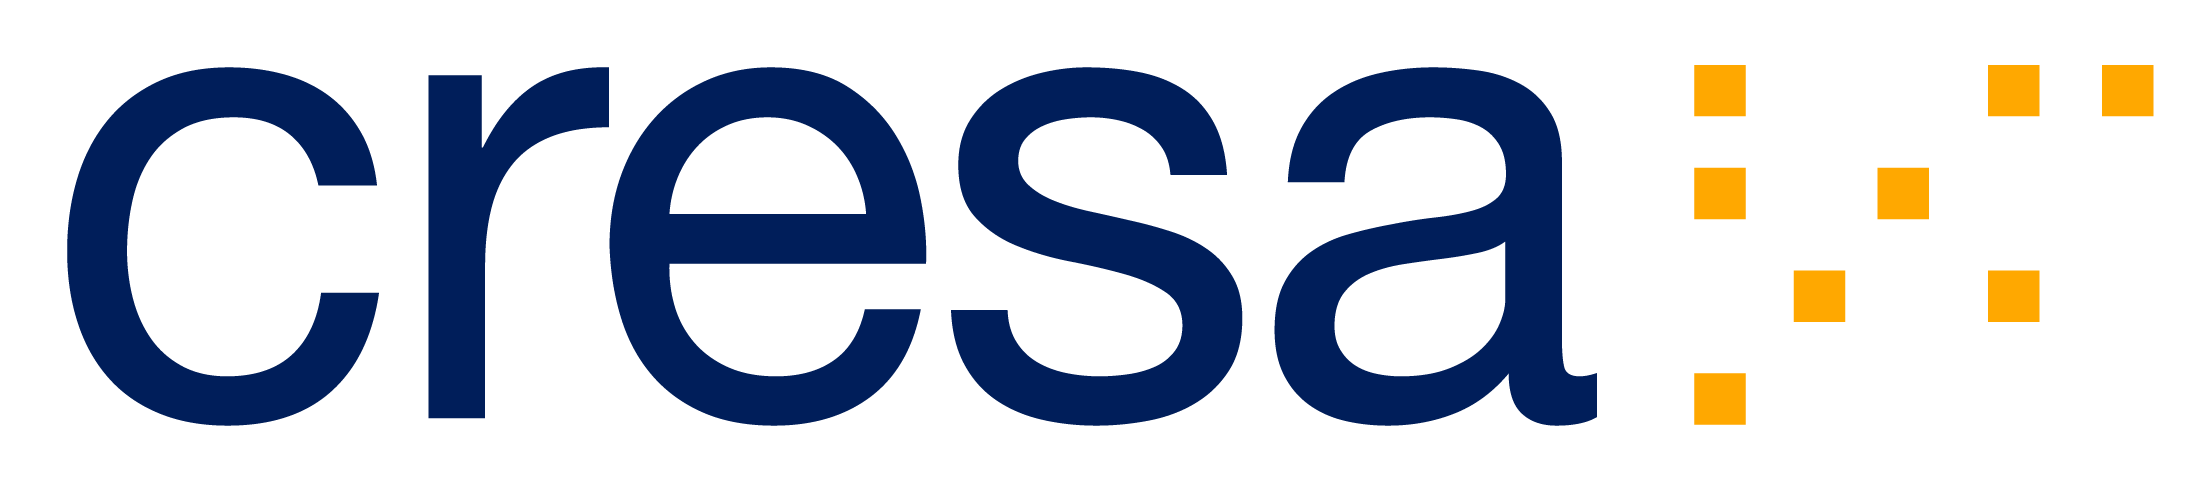 Cresa-logo-landscape